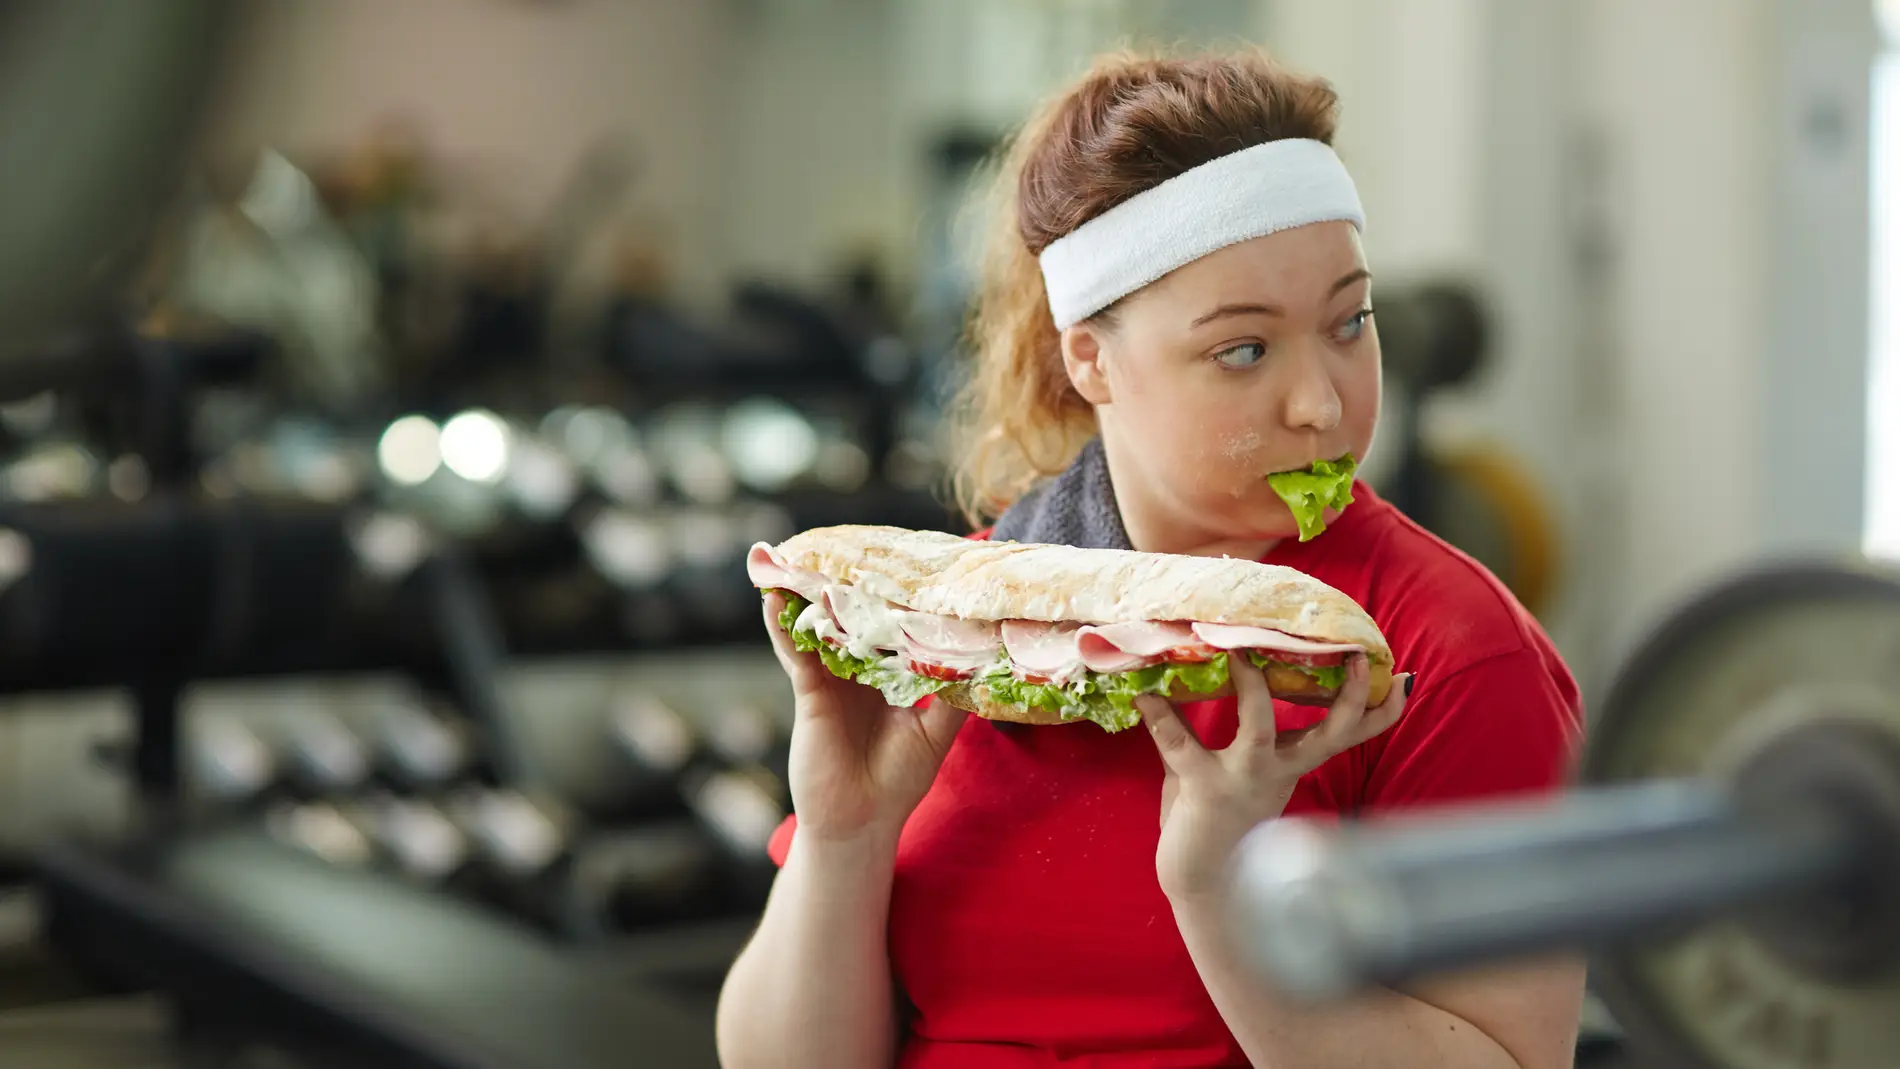 Una chica come un bocadillo enorme en el gimnasio